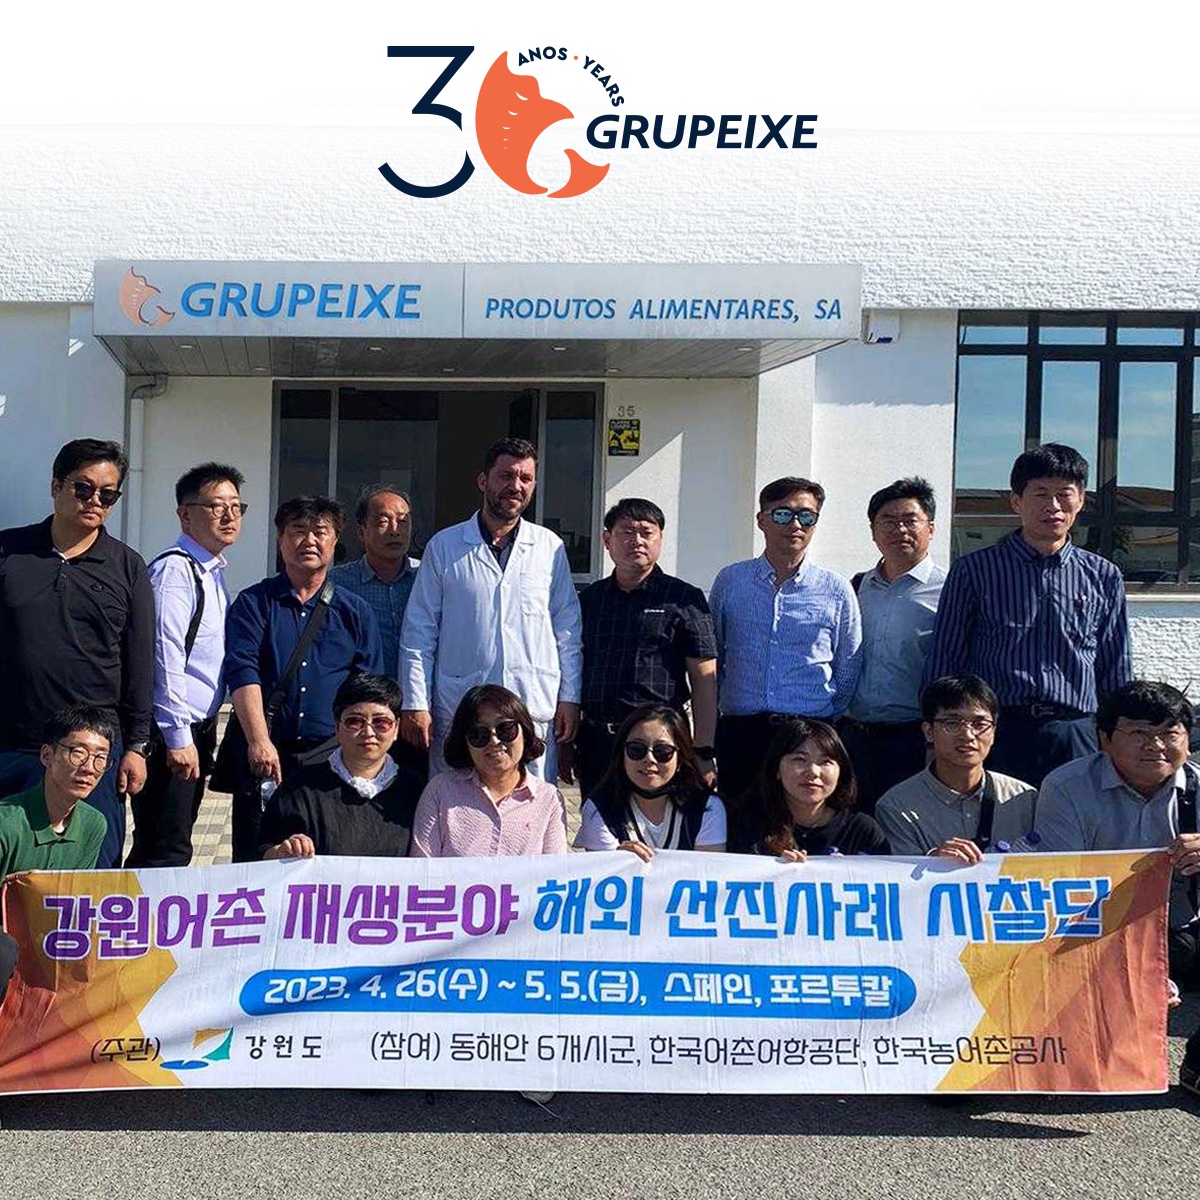 Delegação da Coreia do Sul visita Grupeixe